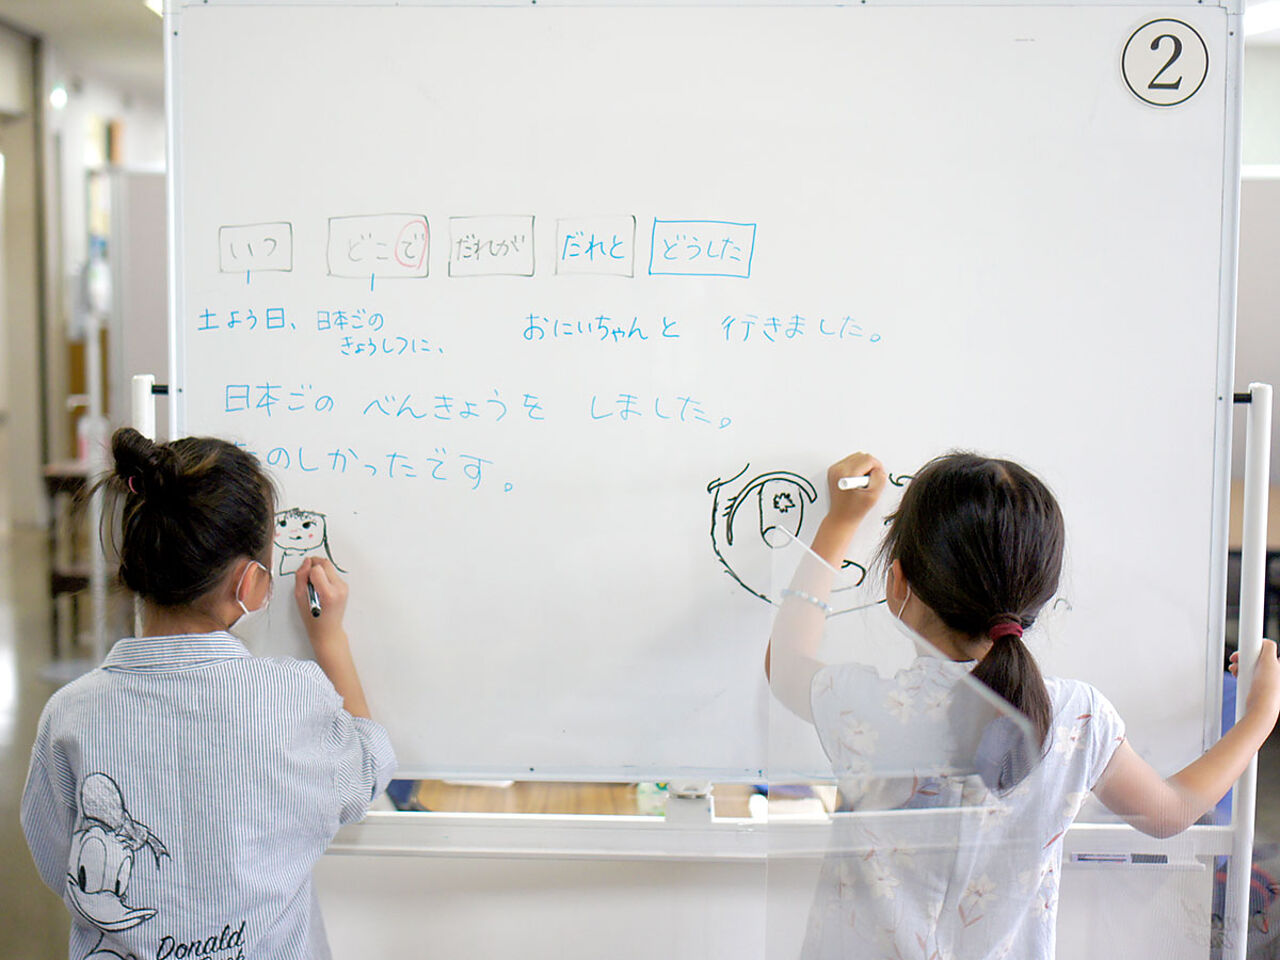 子ども2人がホワイトボードに文字を書いている画像